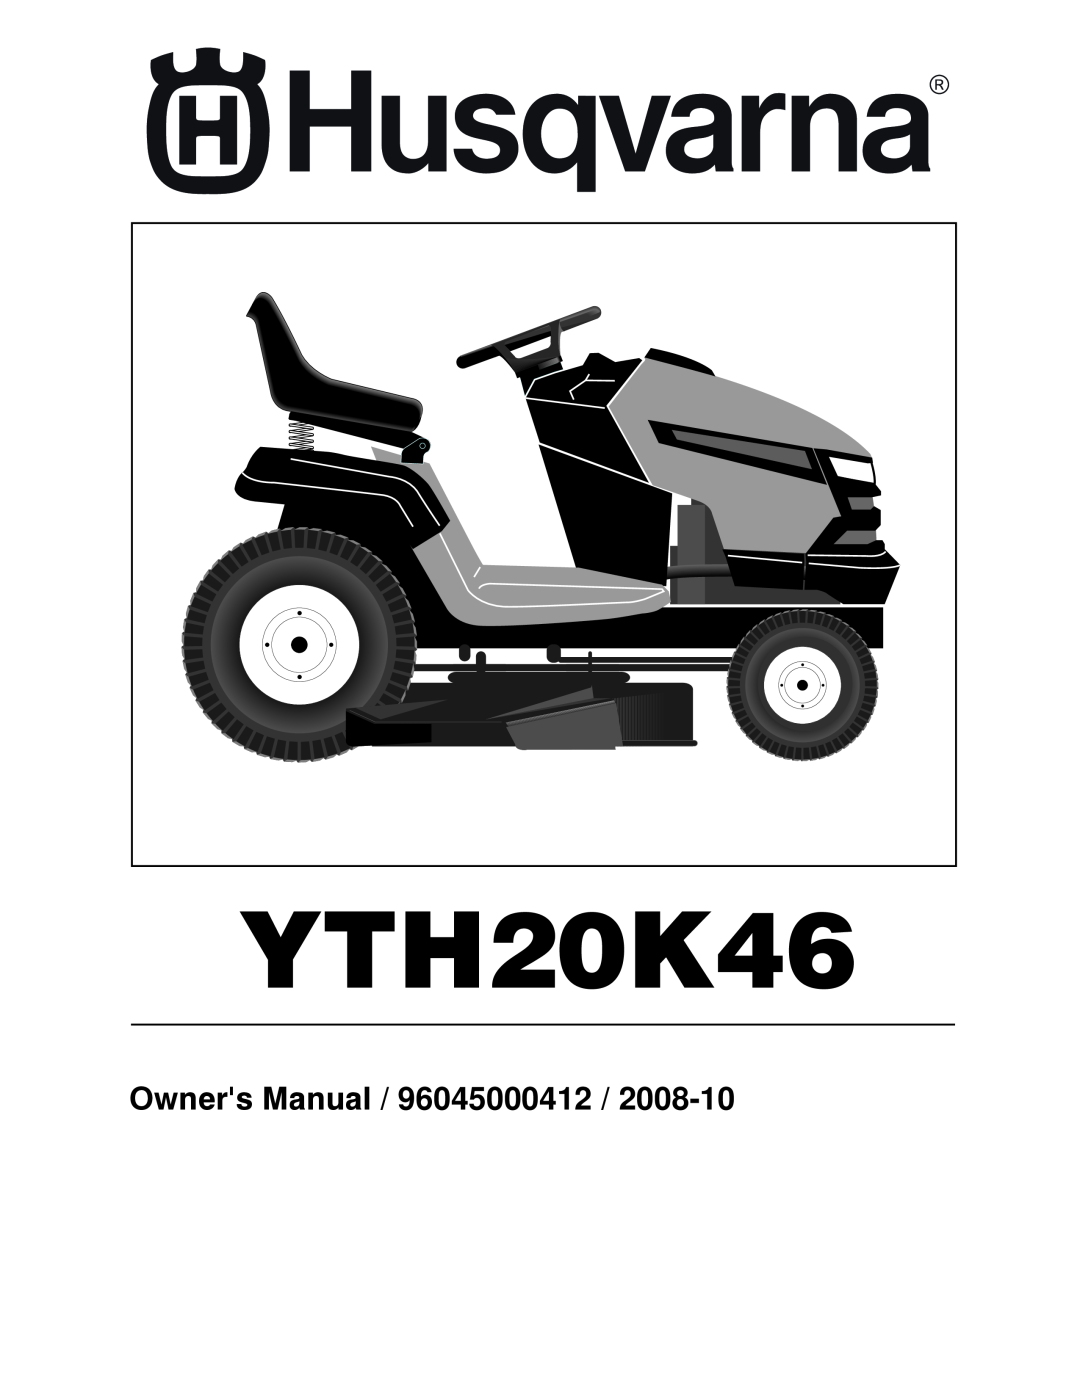 Husqvarna owner manual YTH20K46, Owners Manual / 96045000412 